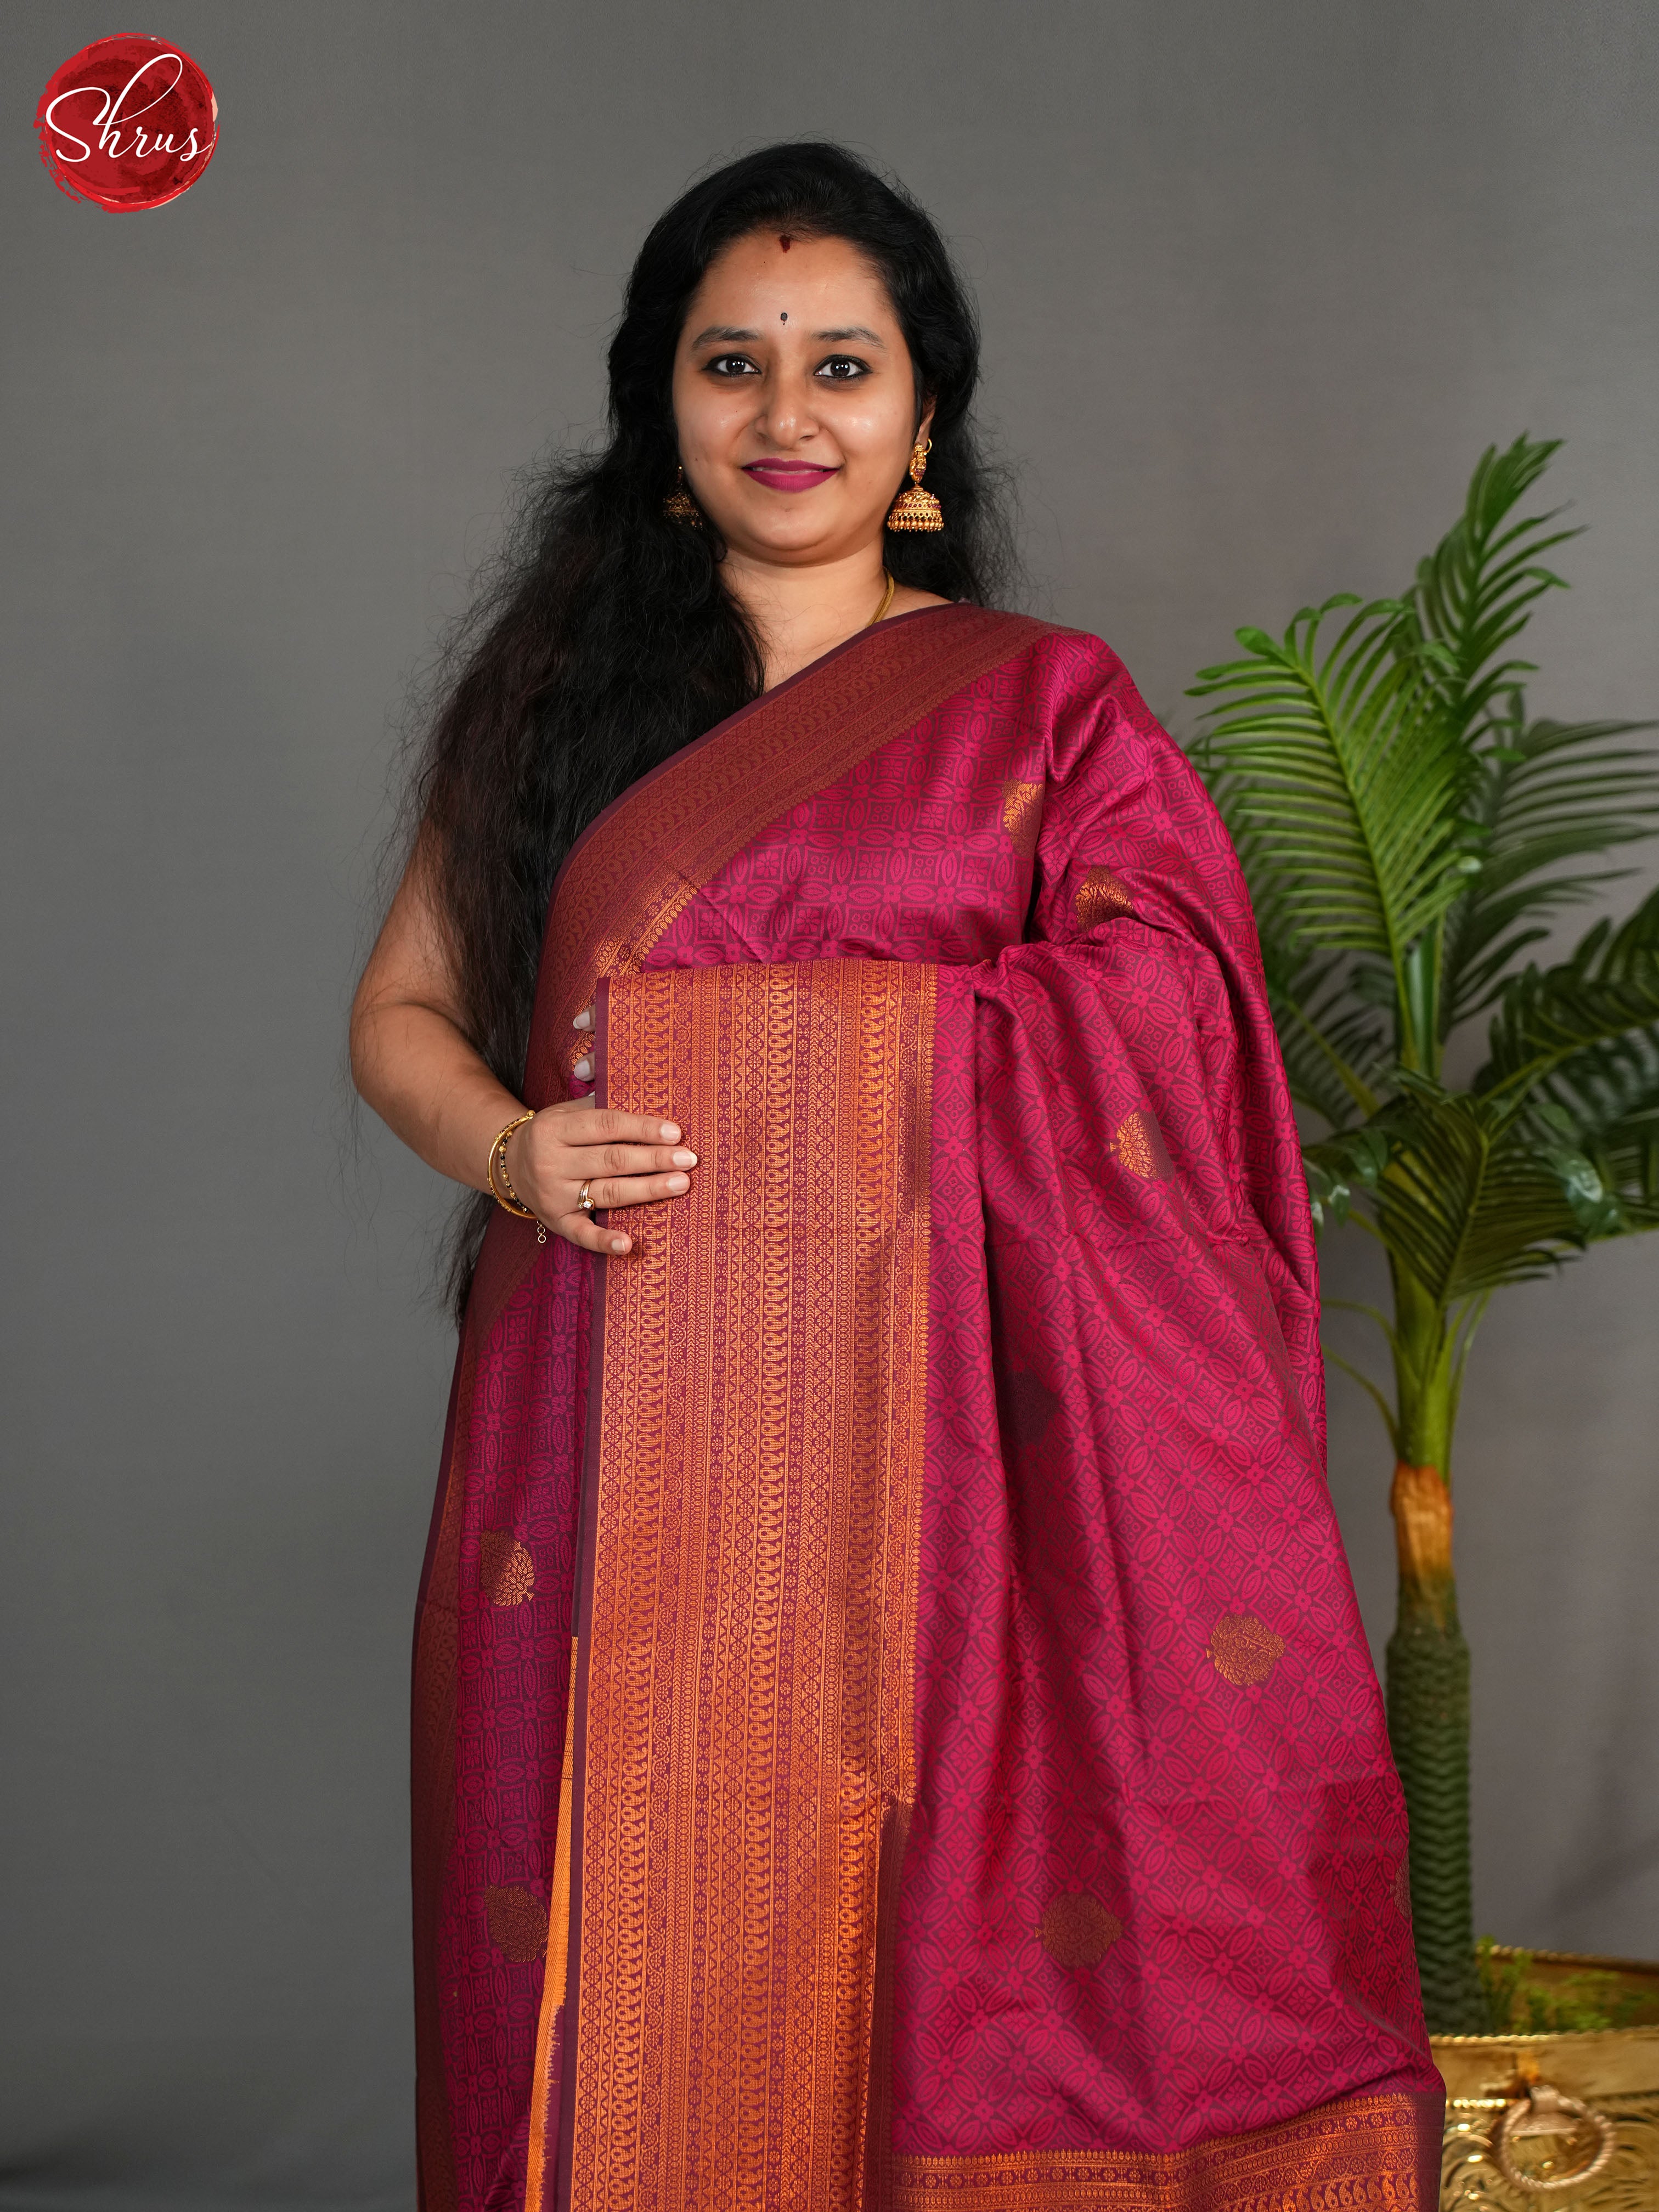 Majenta(Single Tone) - Semi Kanchipuram Saree - Shop on ShrusEternity.com